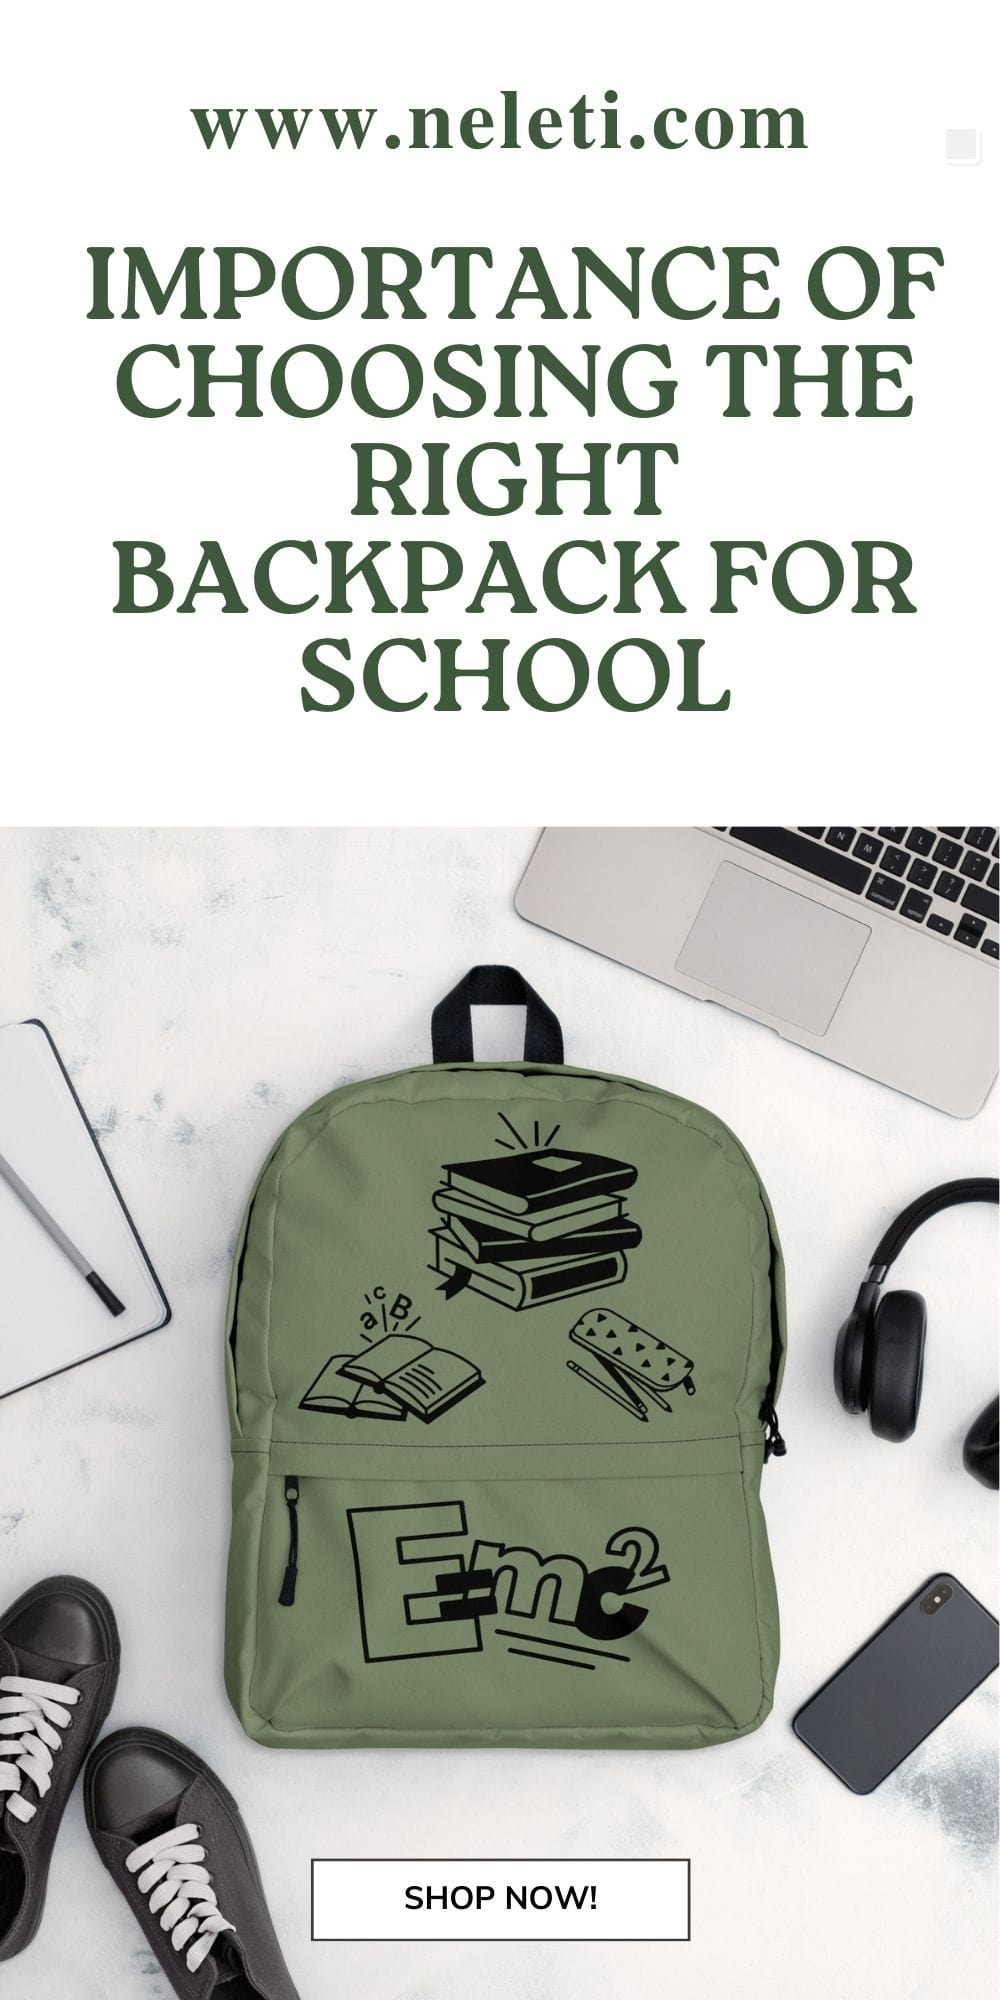 backpacks-for-school-neleti.com